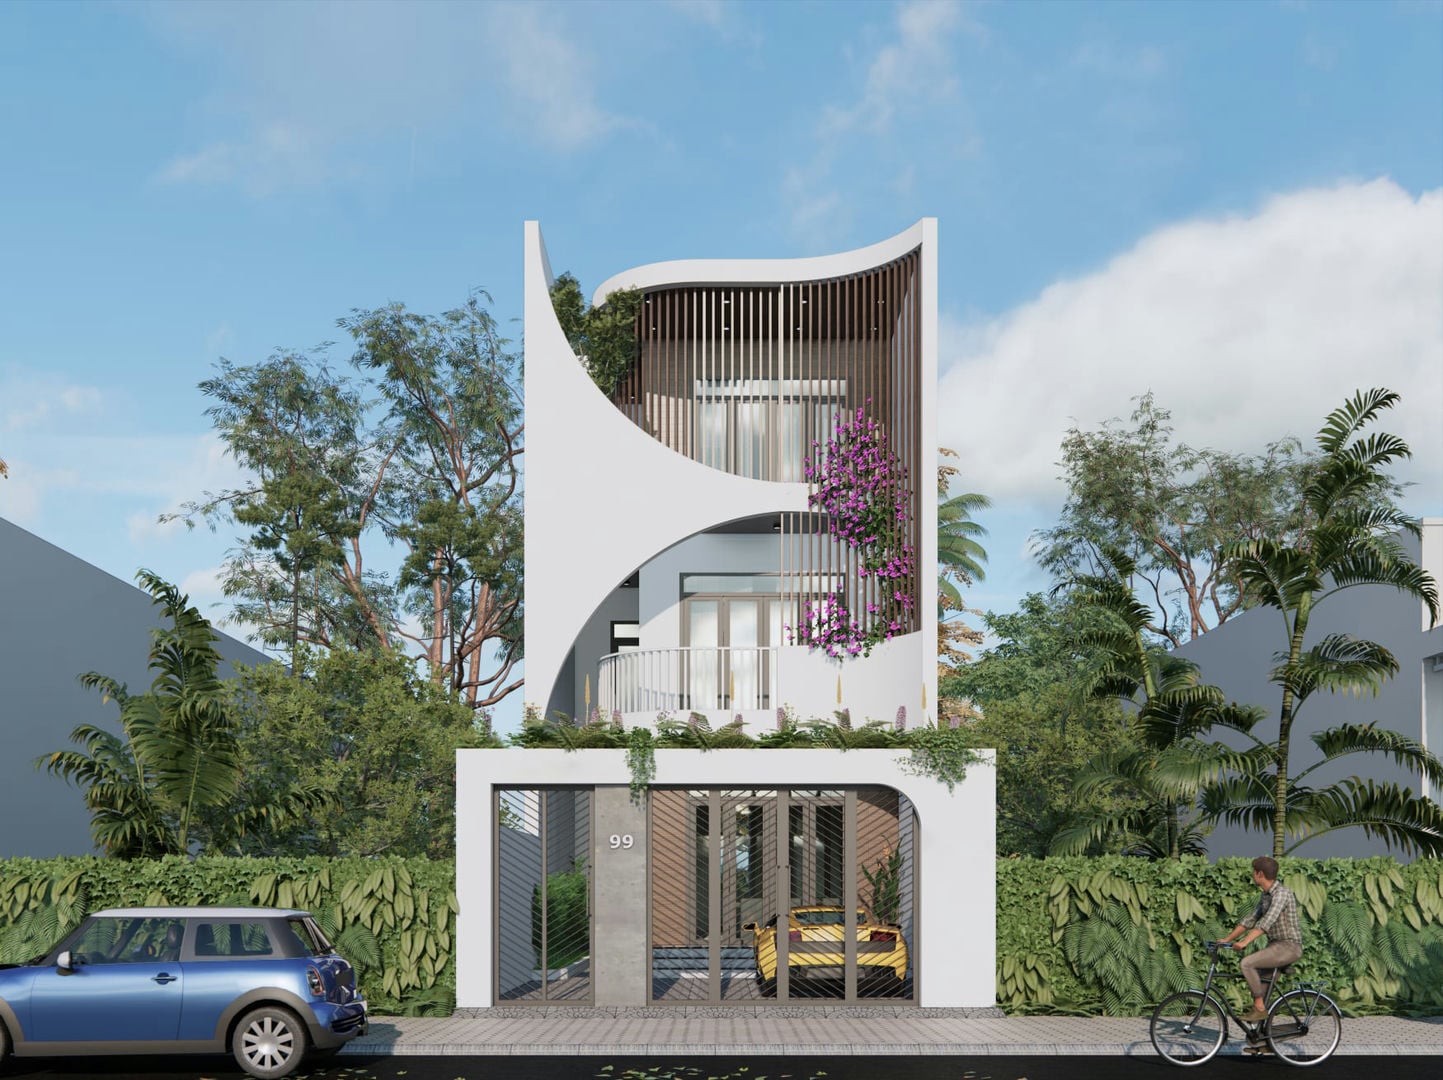 Gợi ý những thiết kế nhà đẹp tại Thanh Hoá để bạn tham khảo